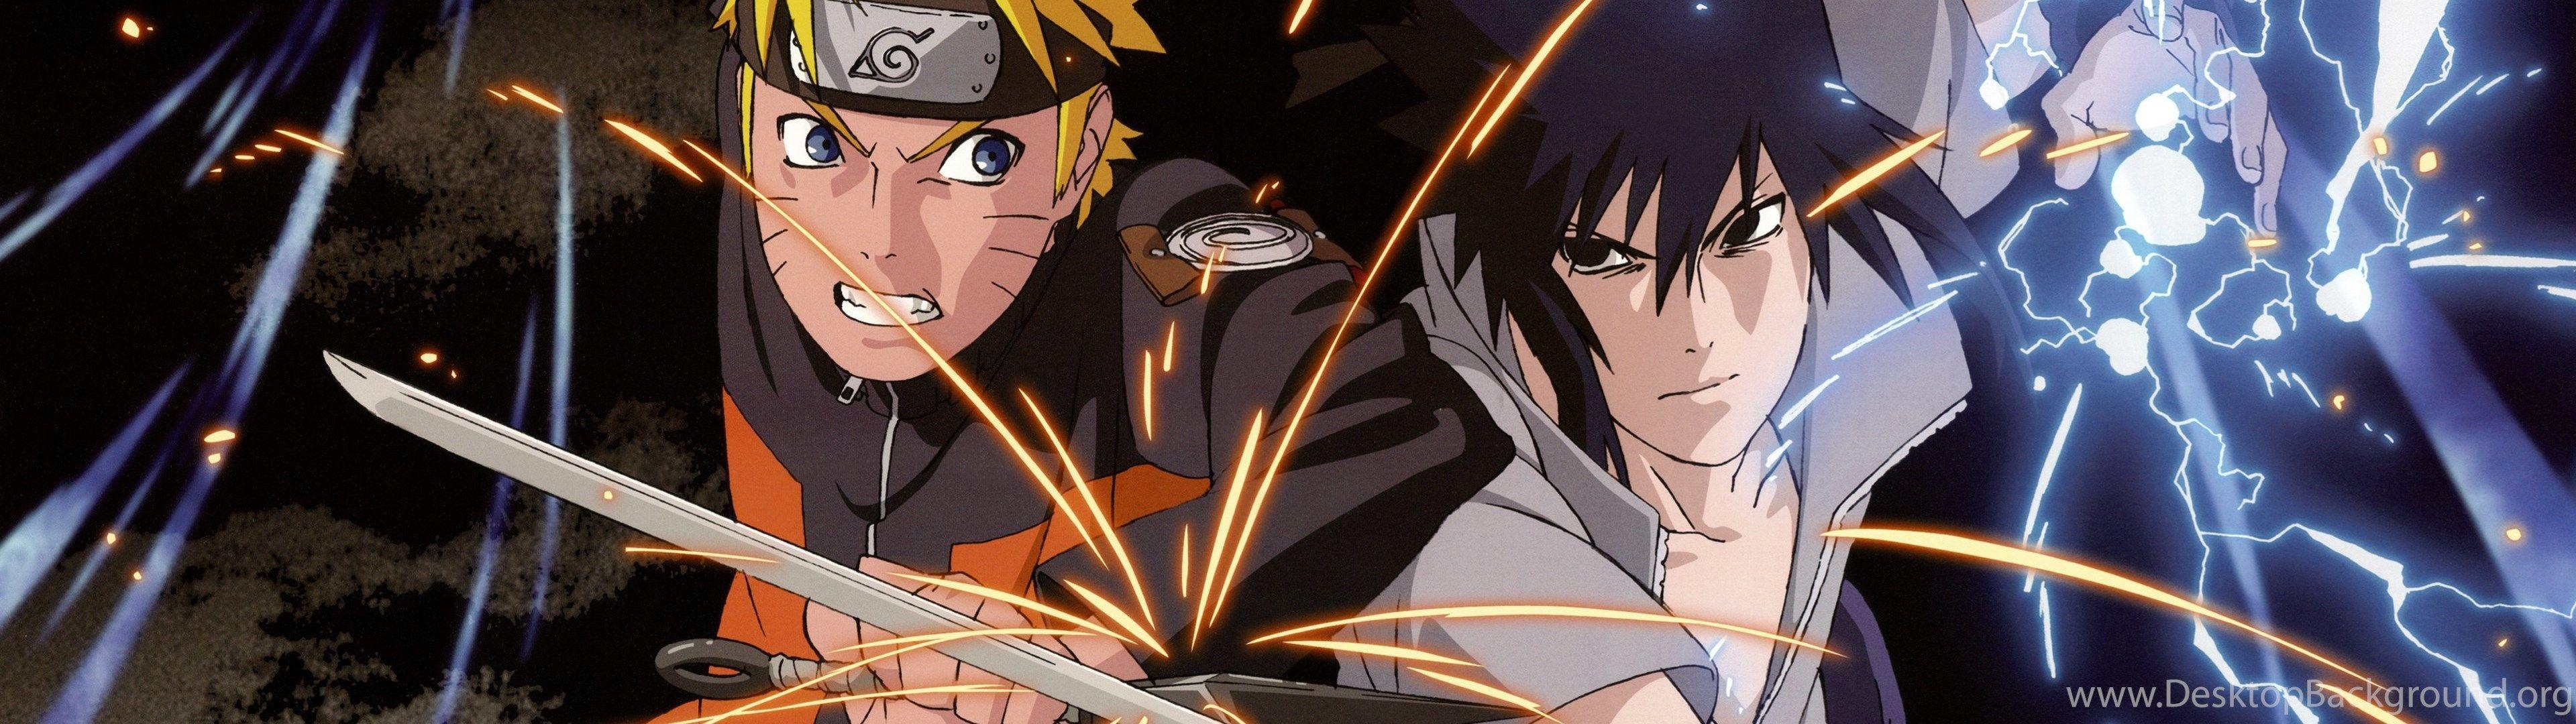 Naruto and Sasuke Dual Screen Wallpapers - Top Free Naruto and Sasuke